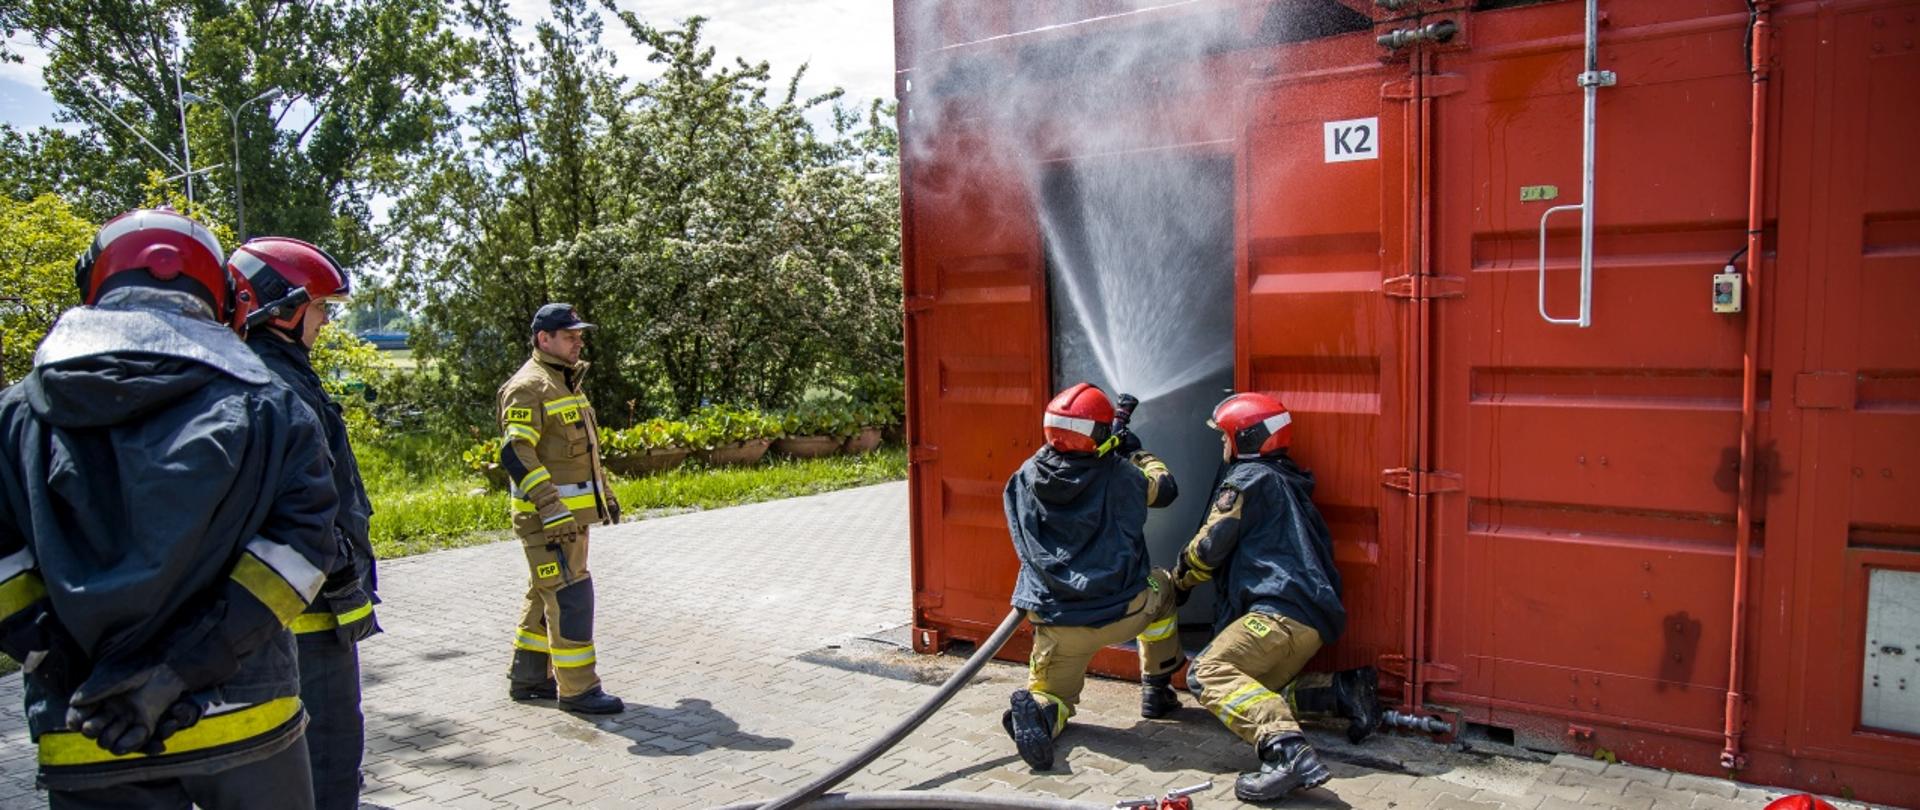 Ćwiczenia z zakresu gaszenia pożarów wewnętrznych